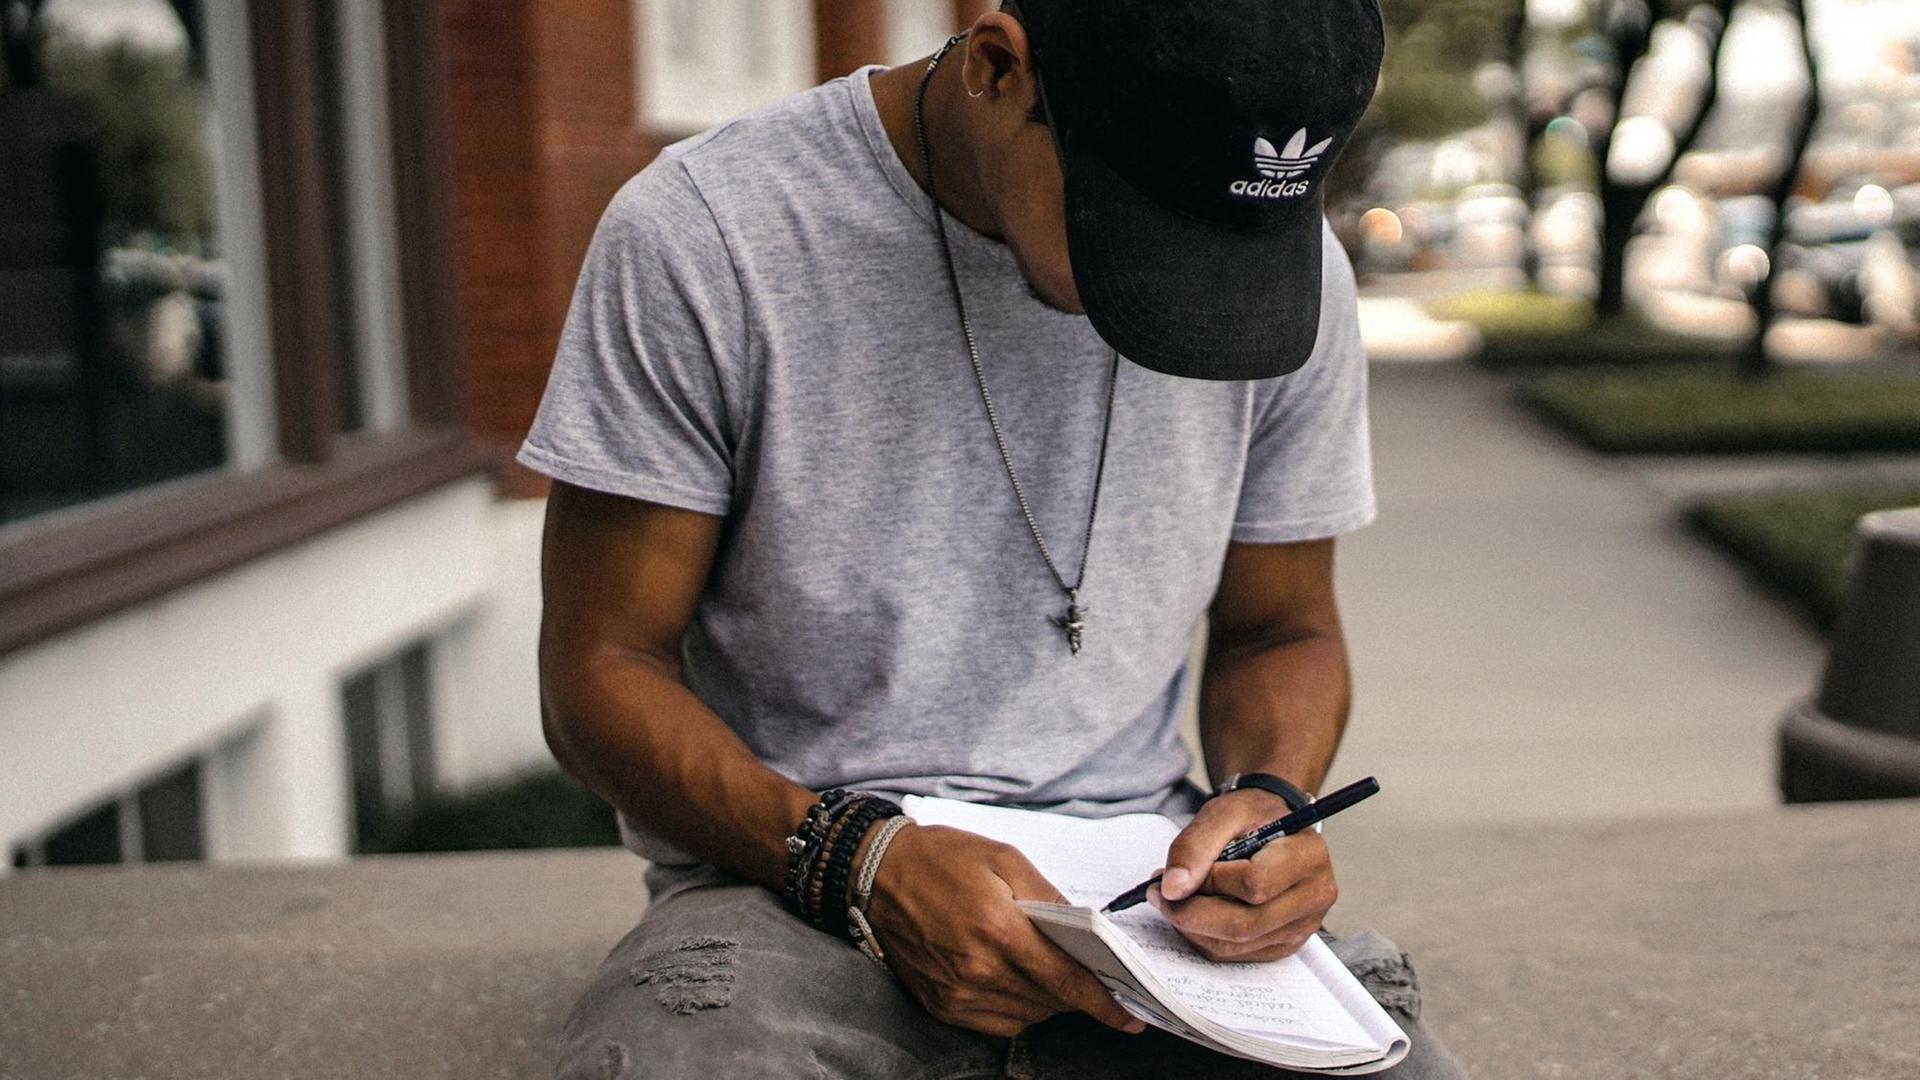 Ein junger Mann mit einer Basecap sitzt alleine vor dem Eingang eines Hauses und schreibt etwas in ein Heft.